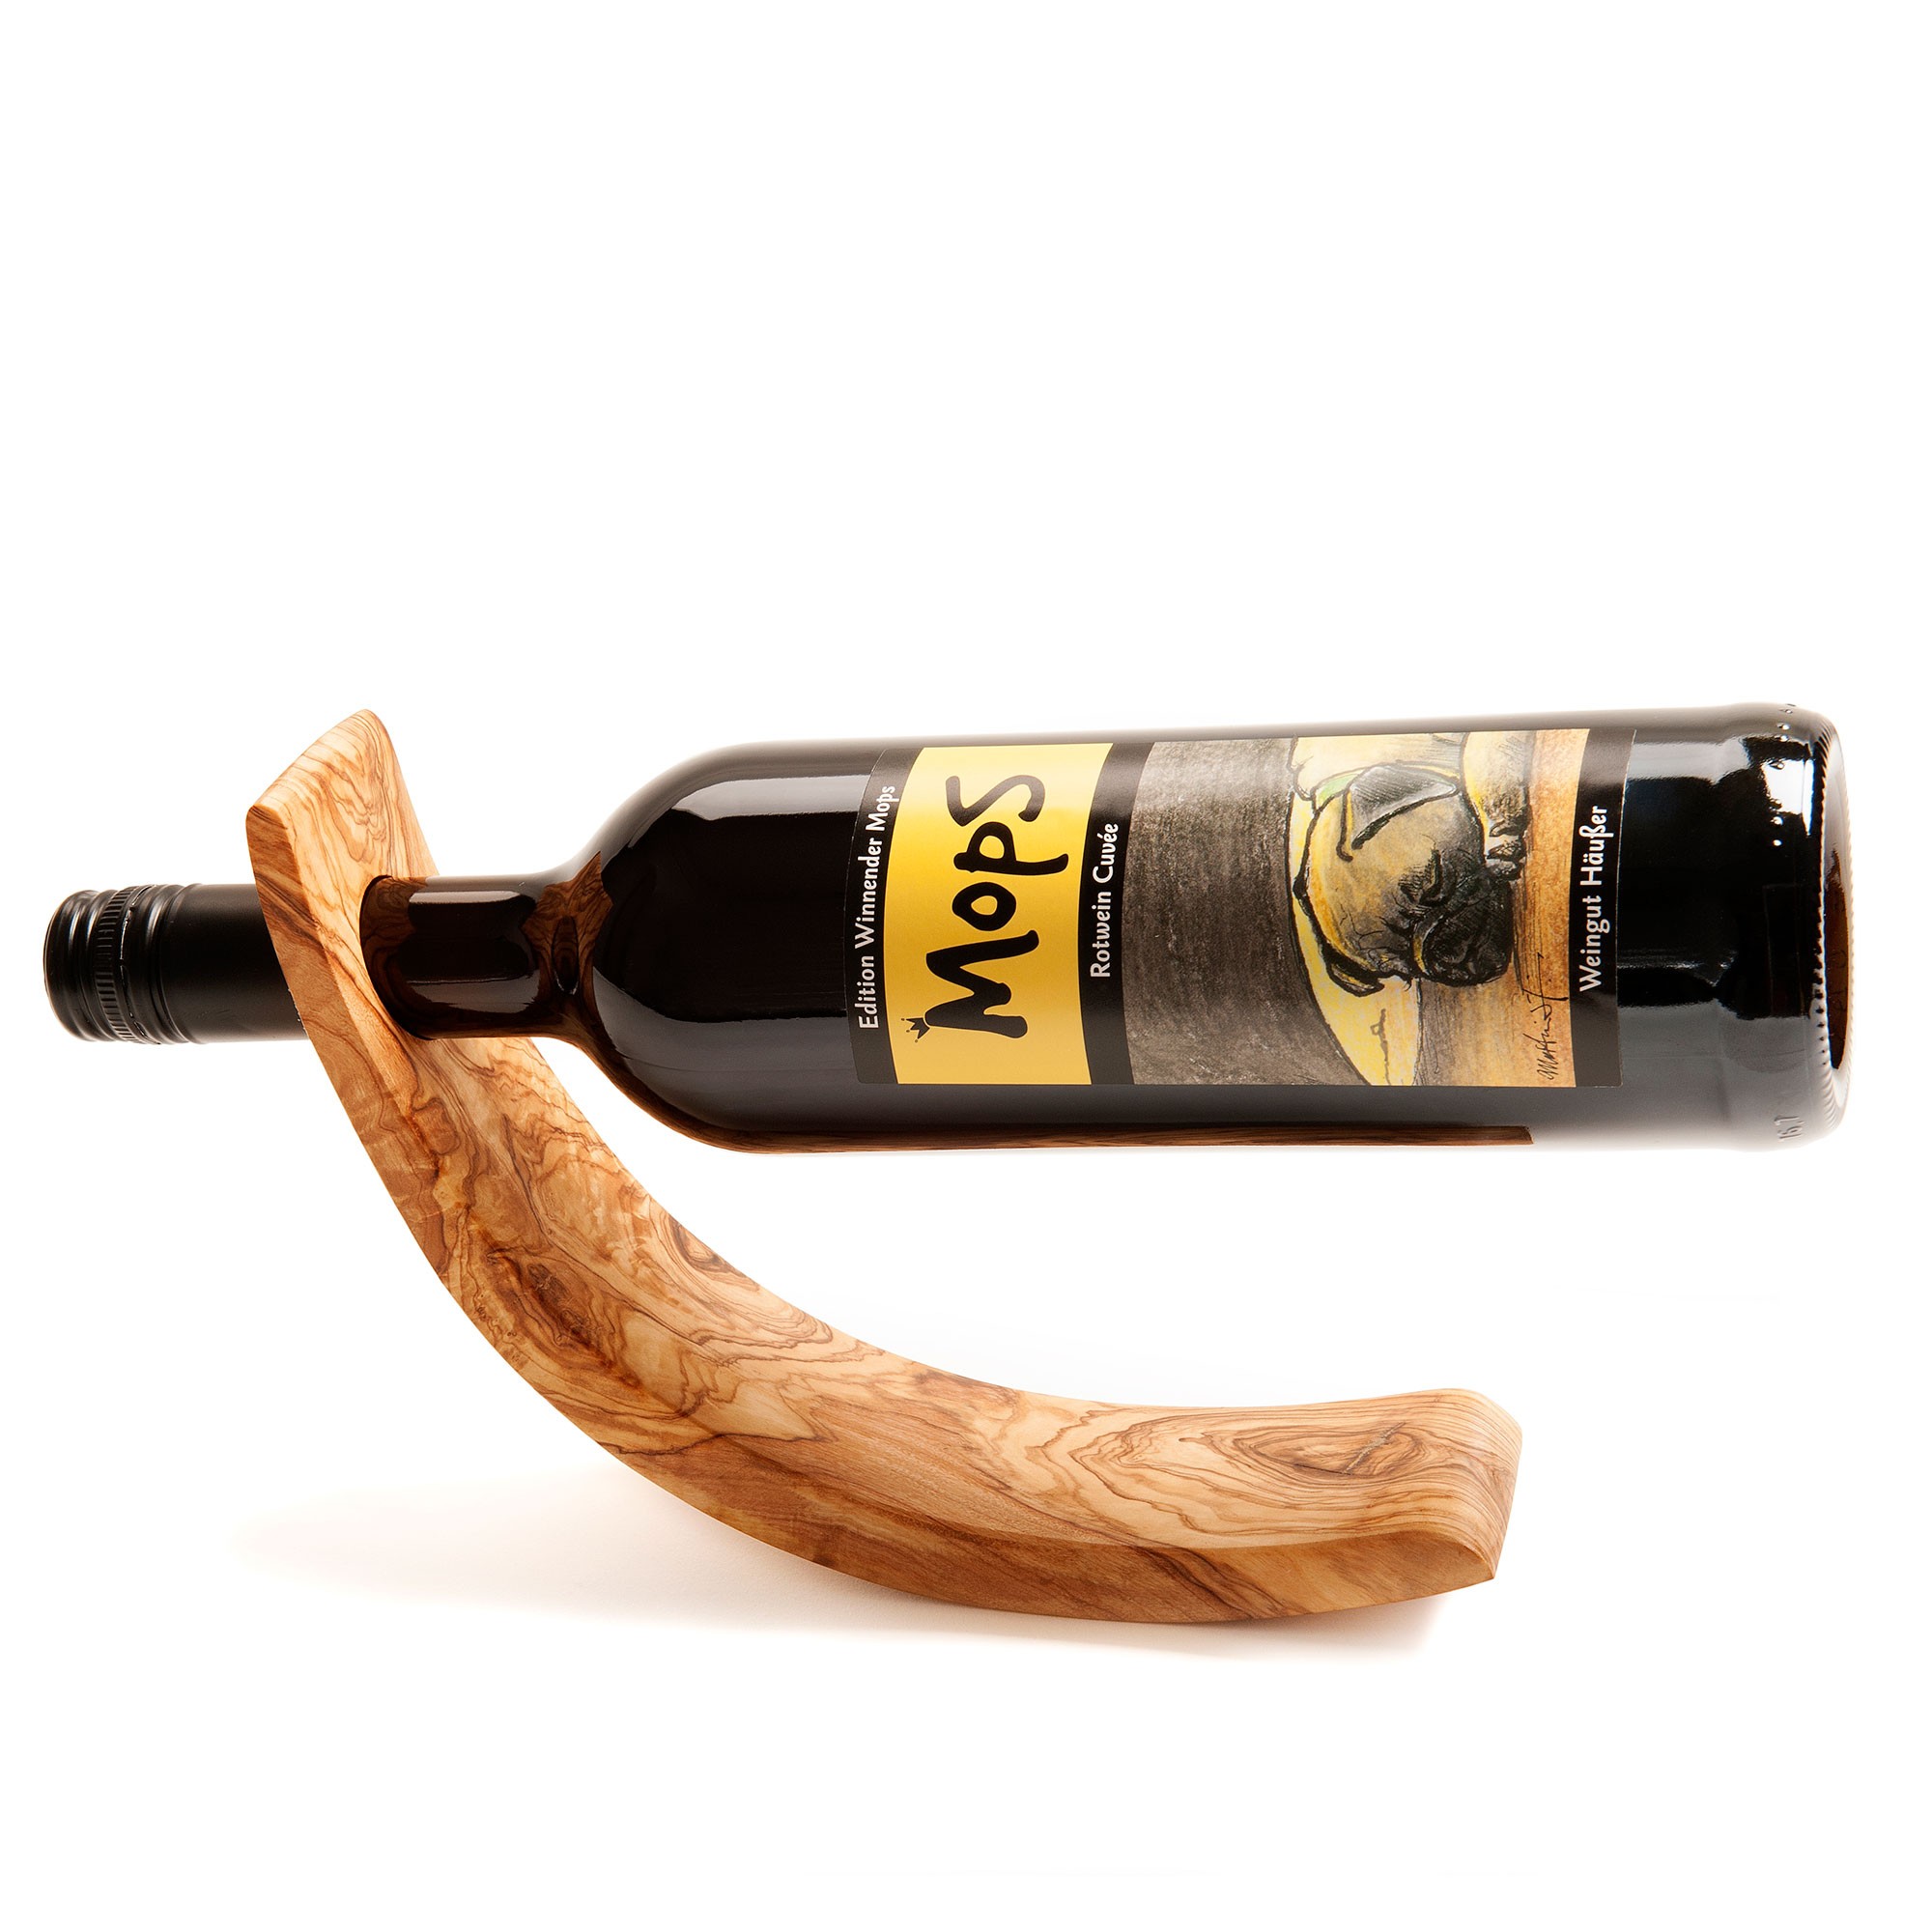 Olive Wood Wine Bottle Holder Handmade in Italy 